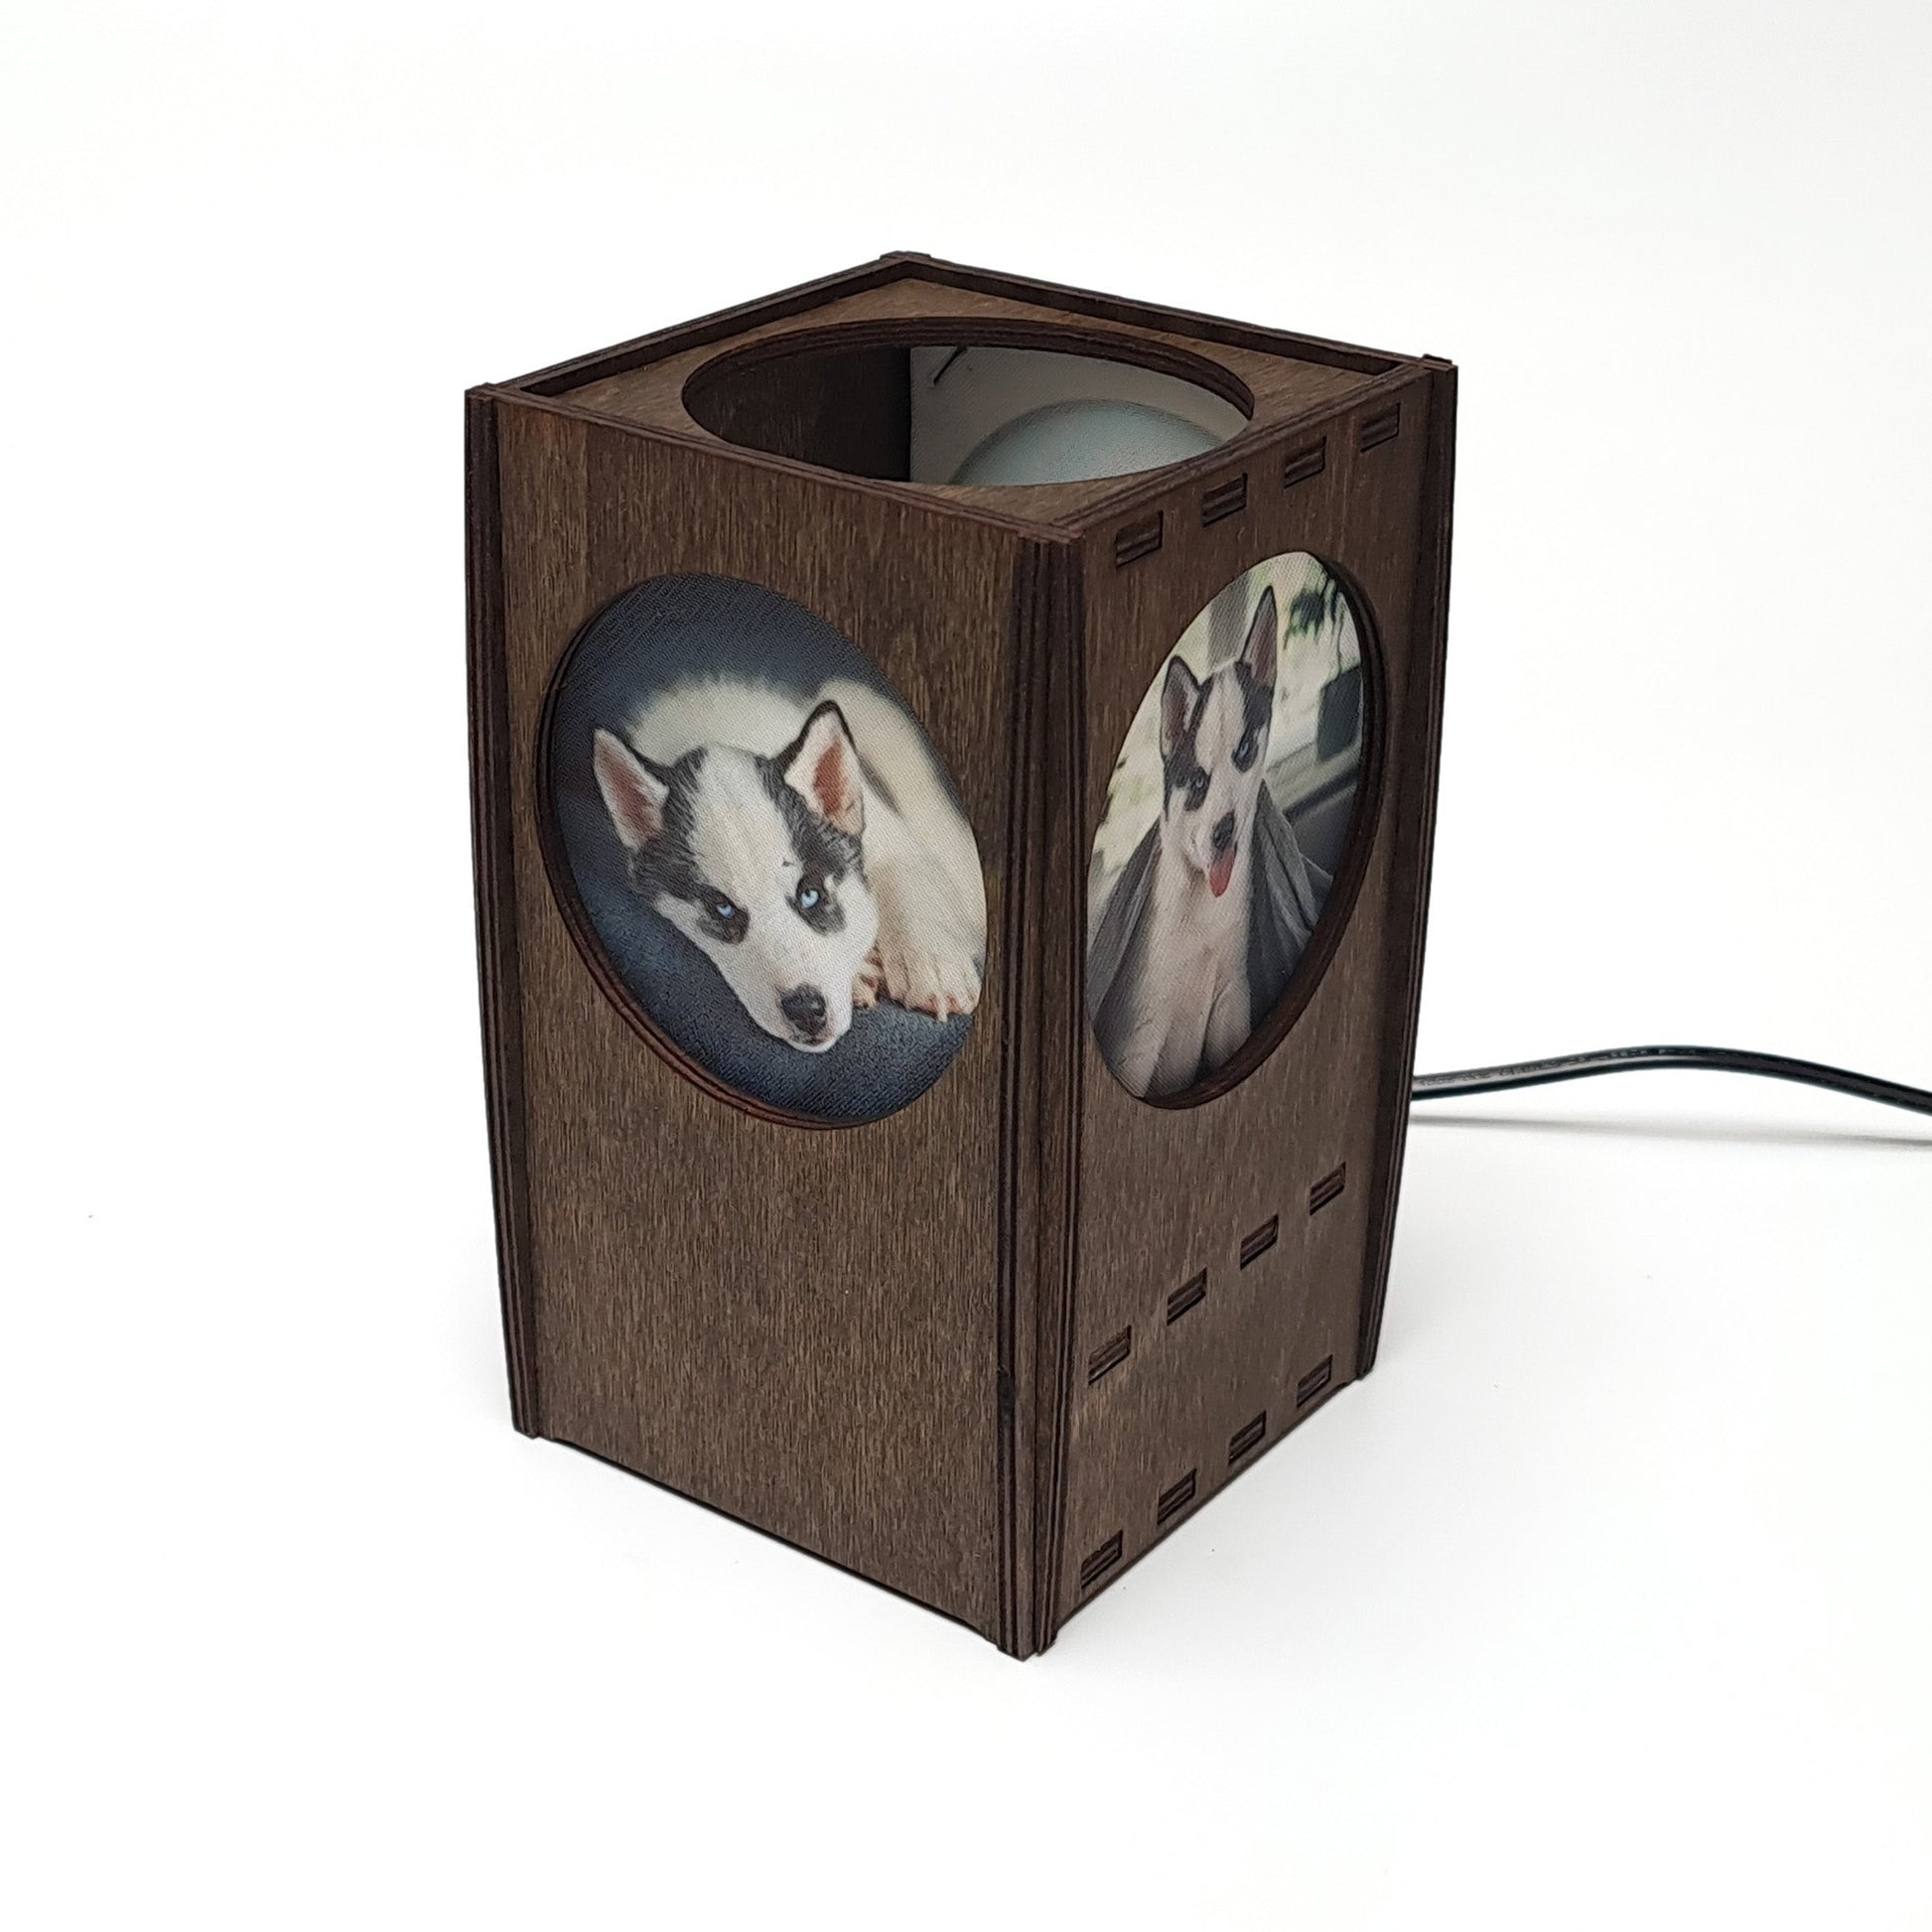 Fotolampe aus Holz mit 3 persönlichen Fotos - Bilderleuchte - Nanino Design Onlineshop -